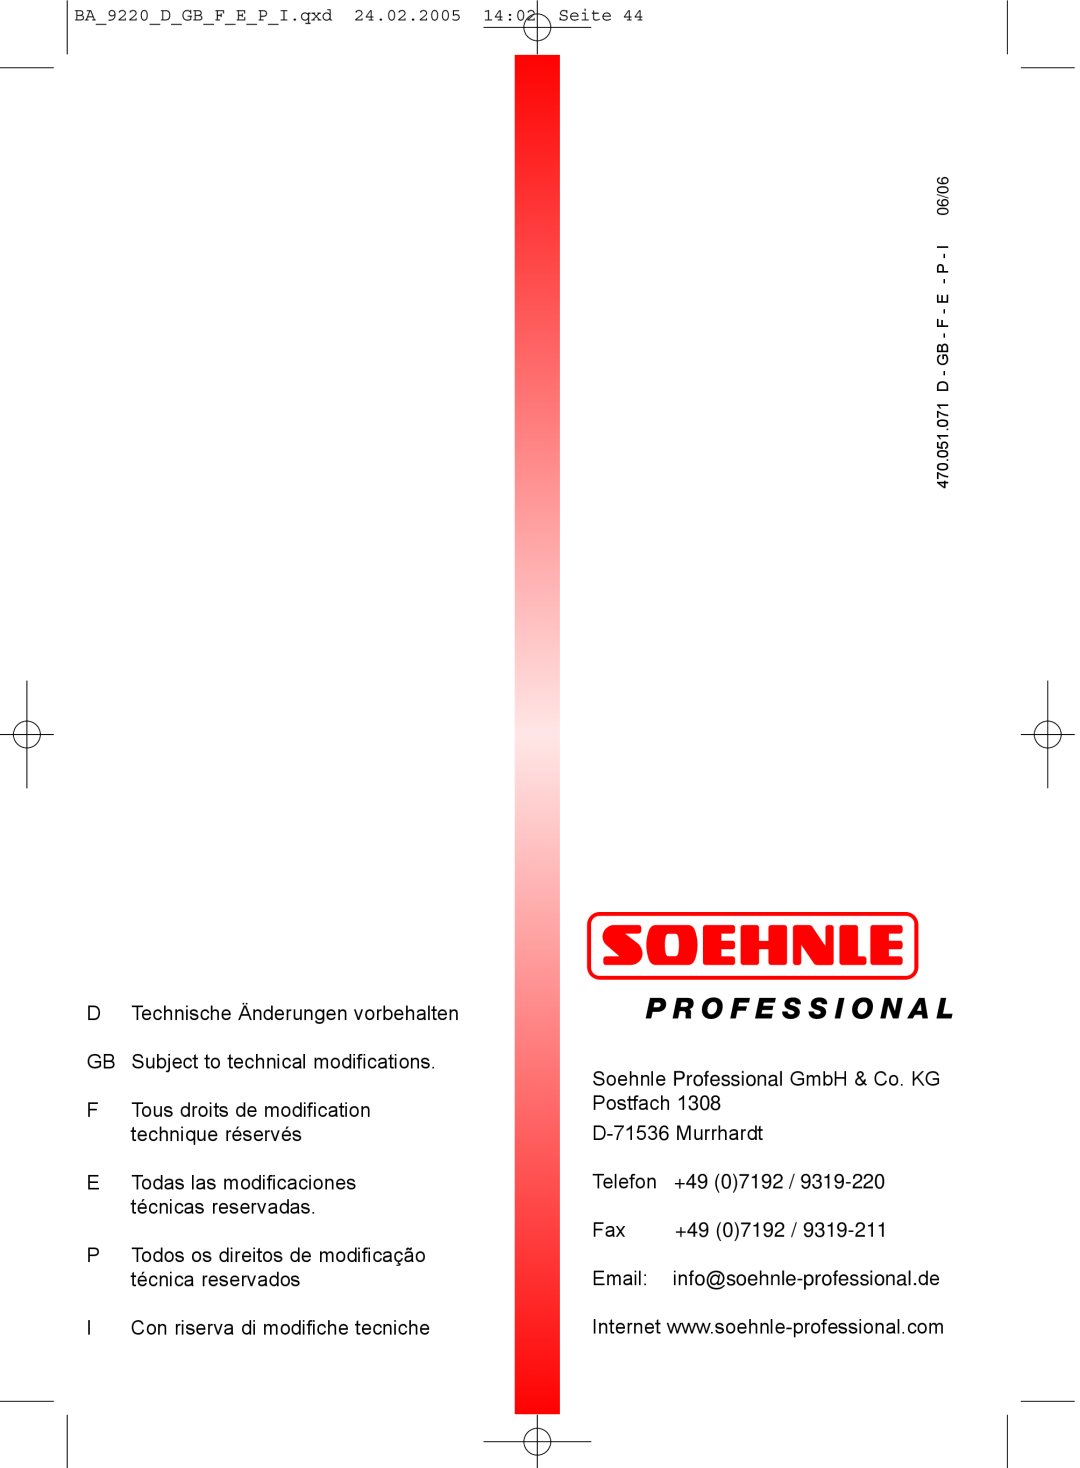 Soehnle 9220 manual P Todos os direitos de modificação técnica reservados 